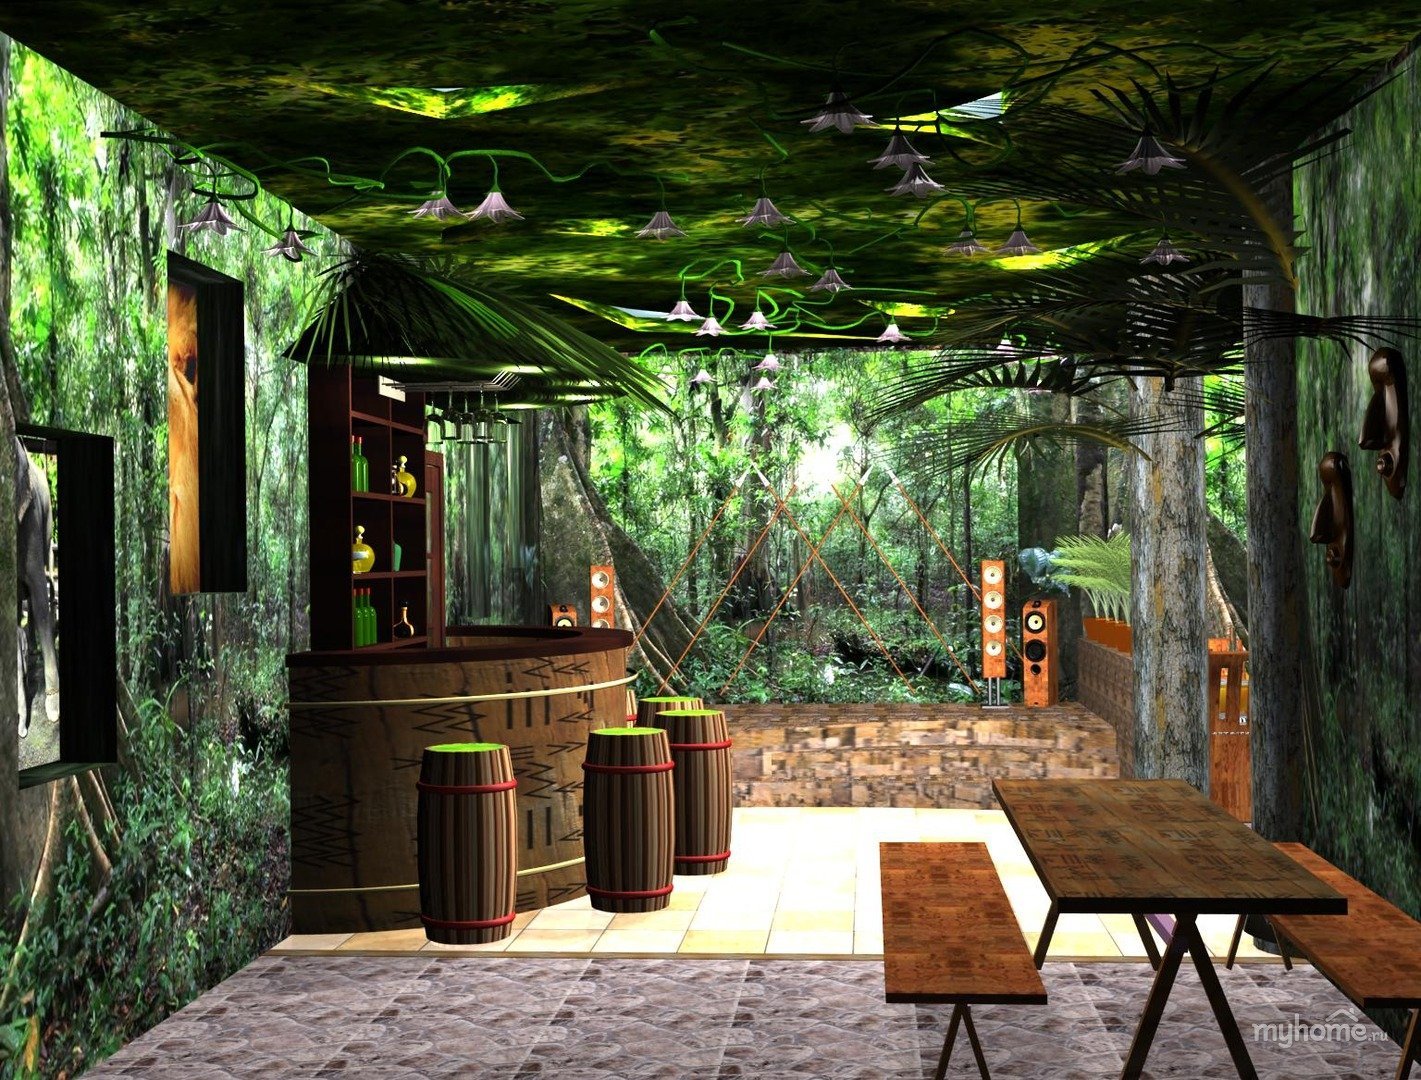 Кафе в стиле джунгли интерьер. Комната в стиле джунгли. Кафе в стиле джунглей. Кухня в стиле джунгли.